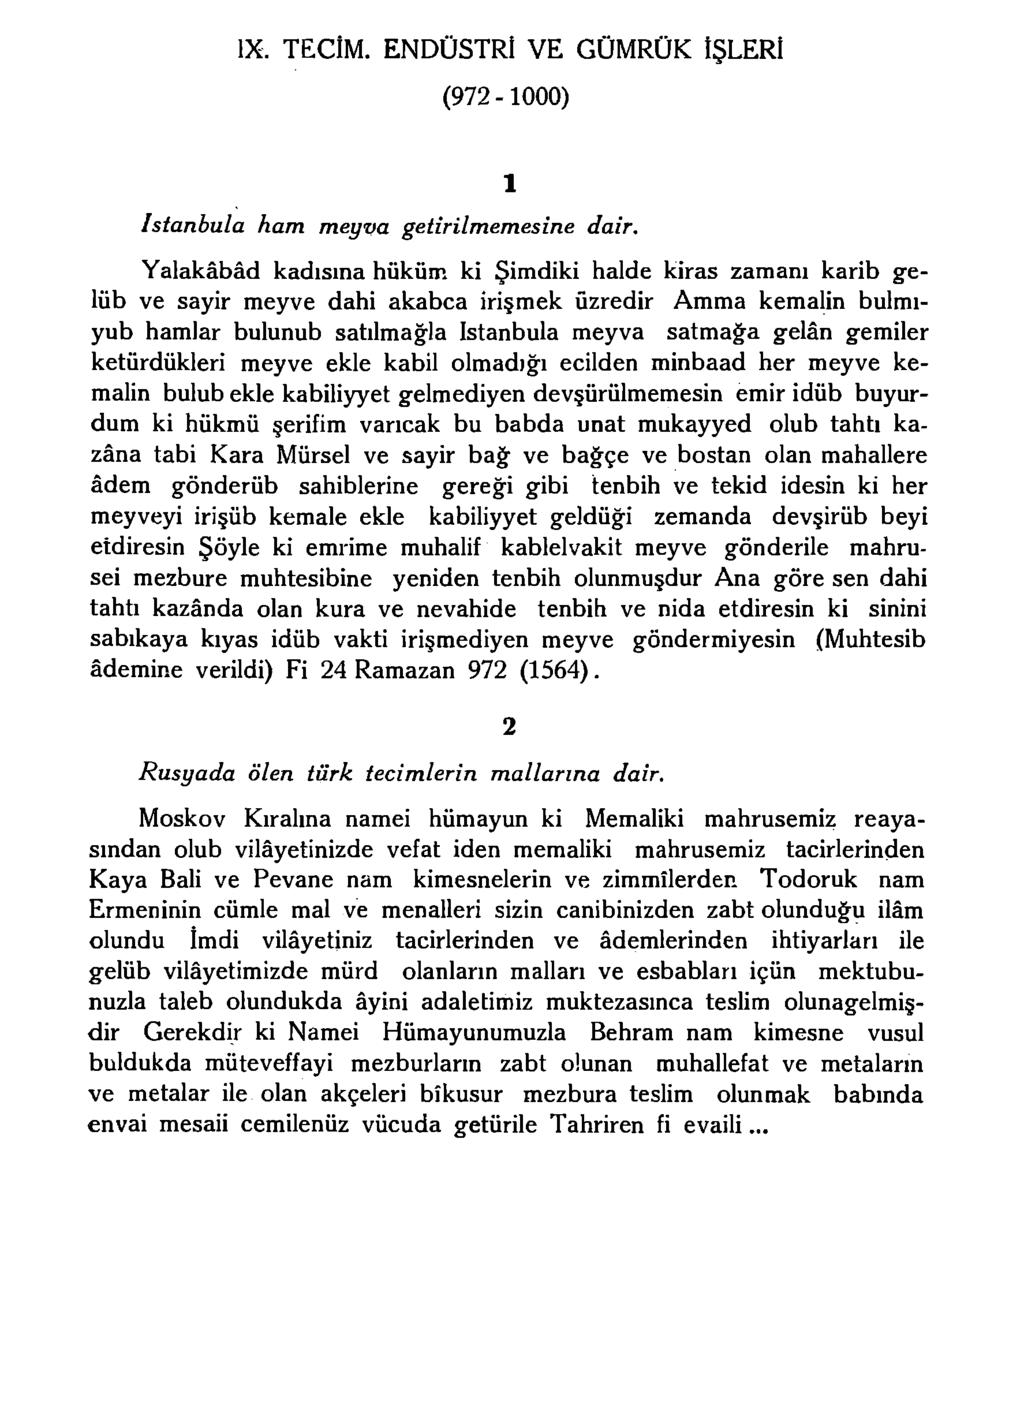 IX. TEClM. ENDÜSTRİ VE GÜMRÜK İŞLERİ (972-1000) Istanbula ham meyva getirilmemesine dair.